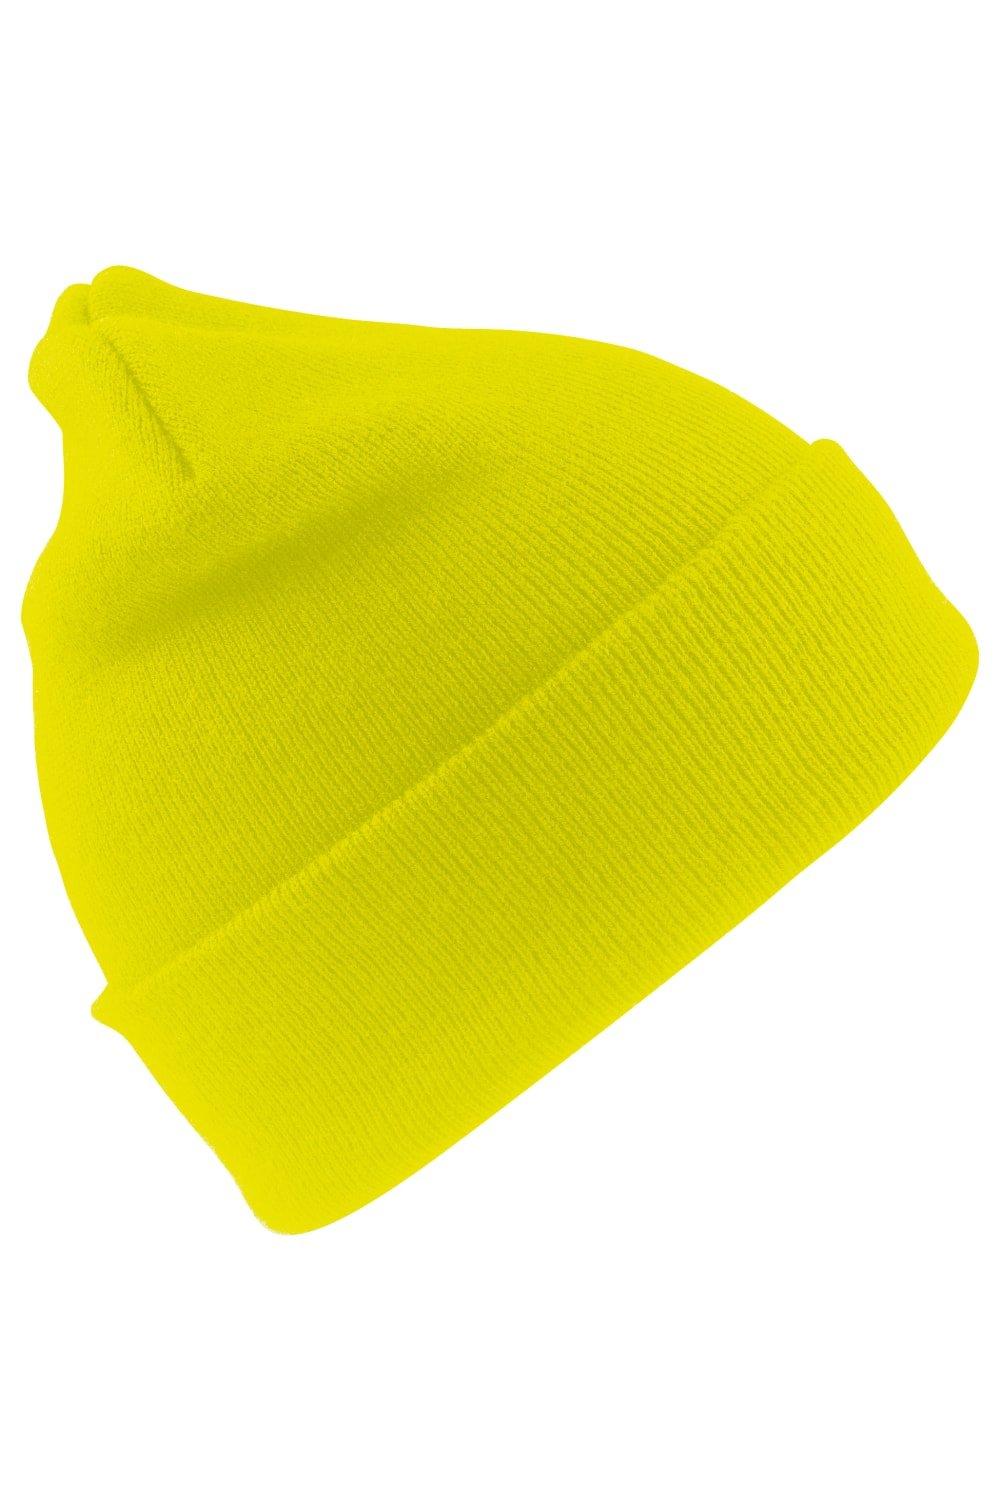 Шерстяная термолыжная/зимняя шапка с утеплителем Thinsulate 3M Result, желтый пряжа семеновская пряжа natasha 28 песочный 5 шт по 100 г